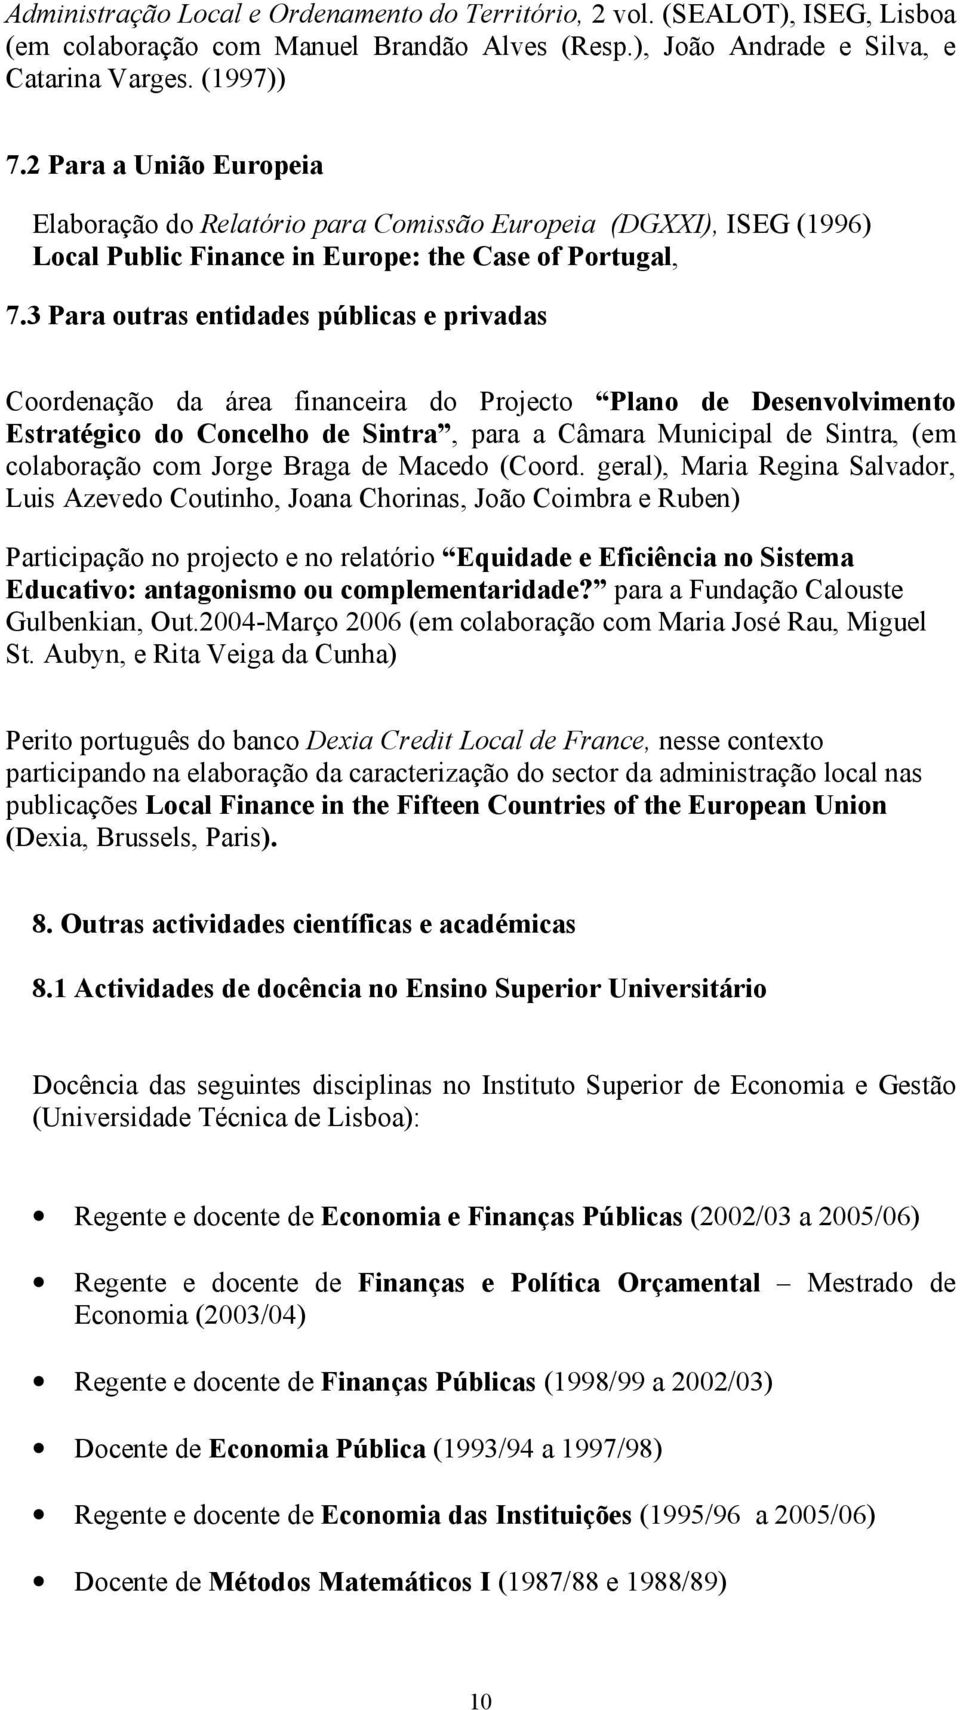 3 Para outras entidades públicas e privadas Coordenação da área financeira do Projecto Plano de Desenvolvimento Estratégico do Concelho de Sintra, para a Câmara Municipal de Sintra, (em colaboração